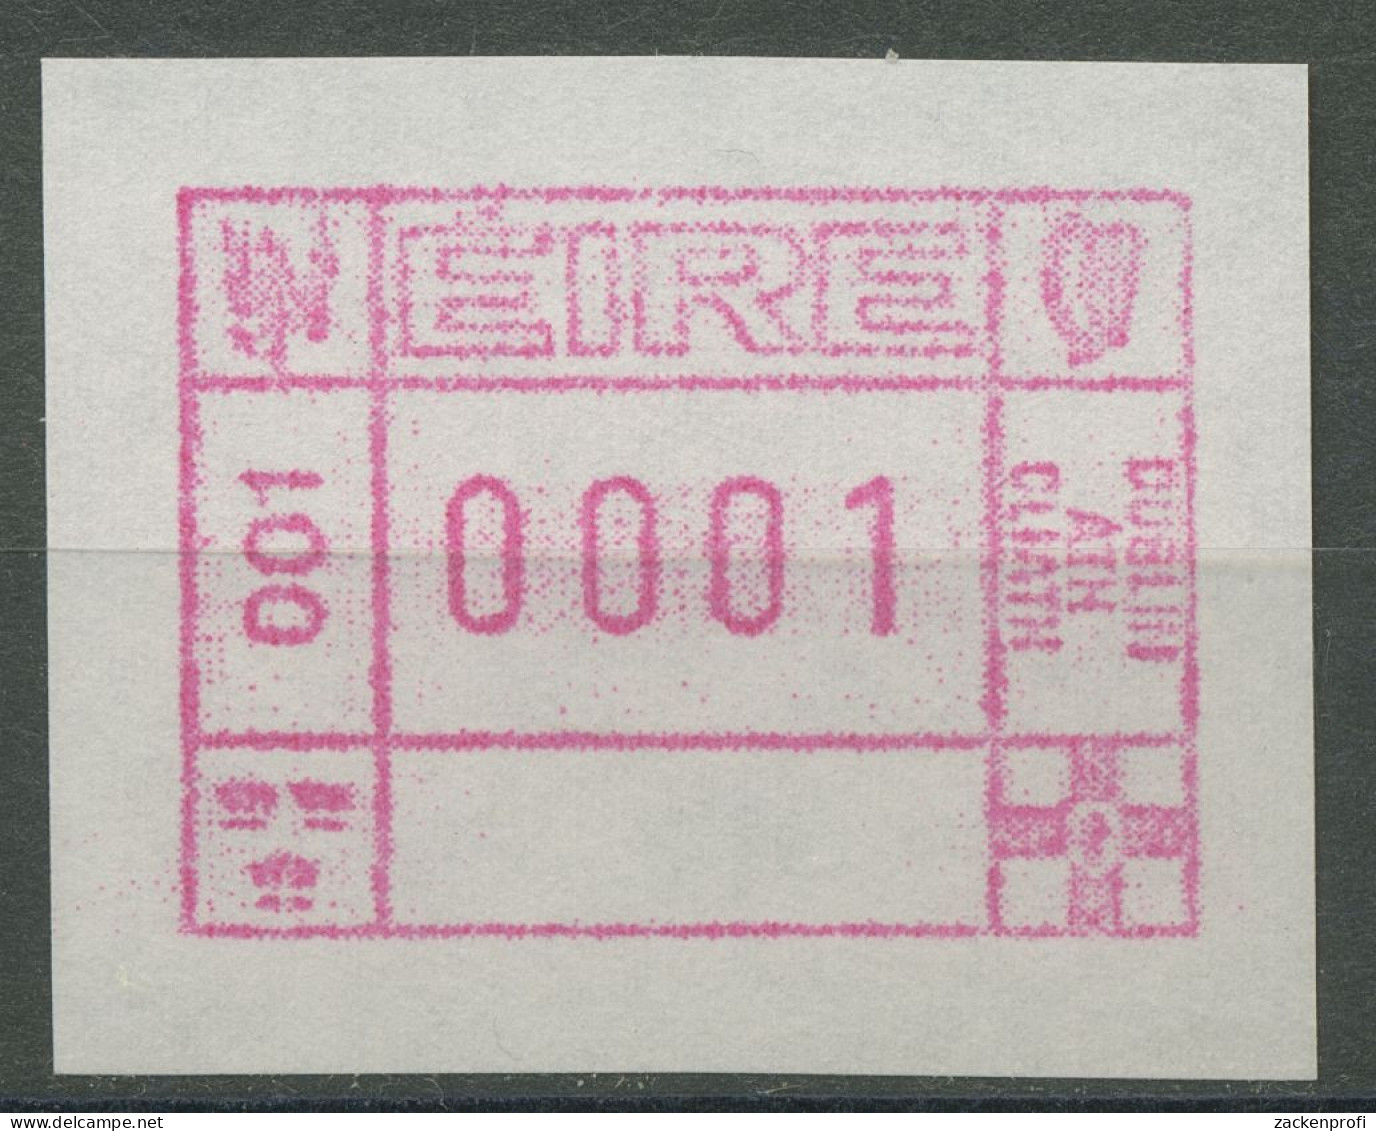 Irland Automatenmarken 1990 Freimarke Einzelwert ATM 1 Postfrisch - Automatenmarken (Frama)